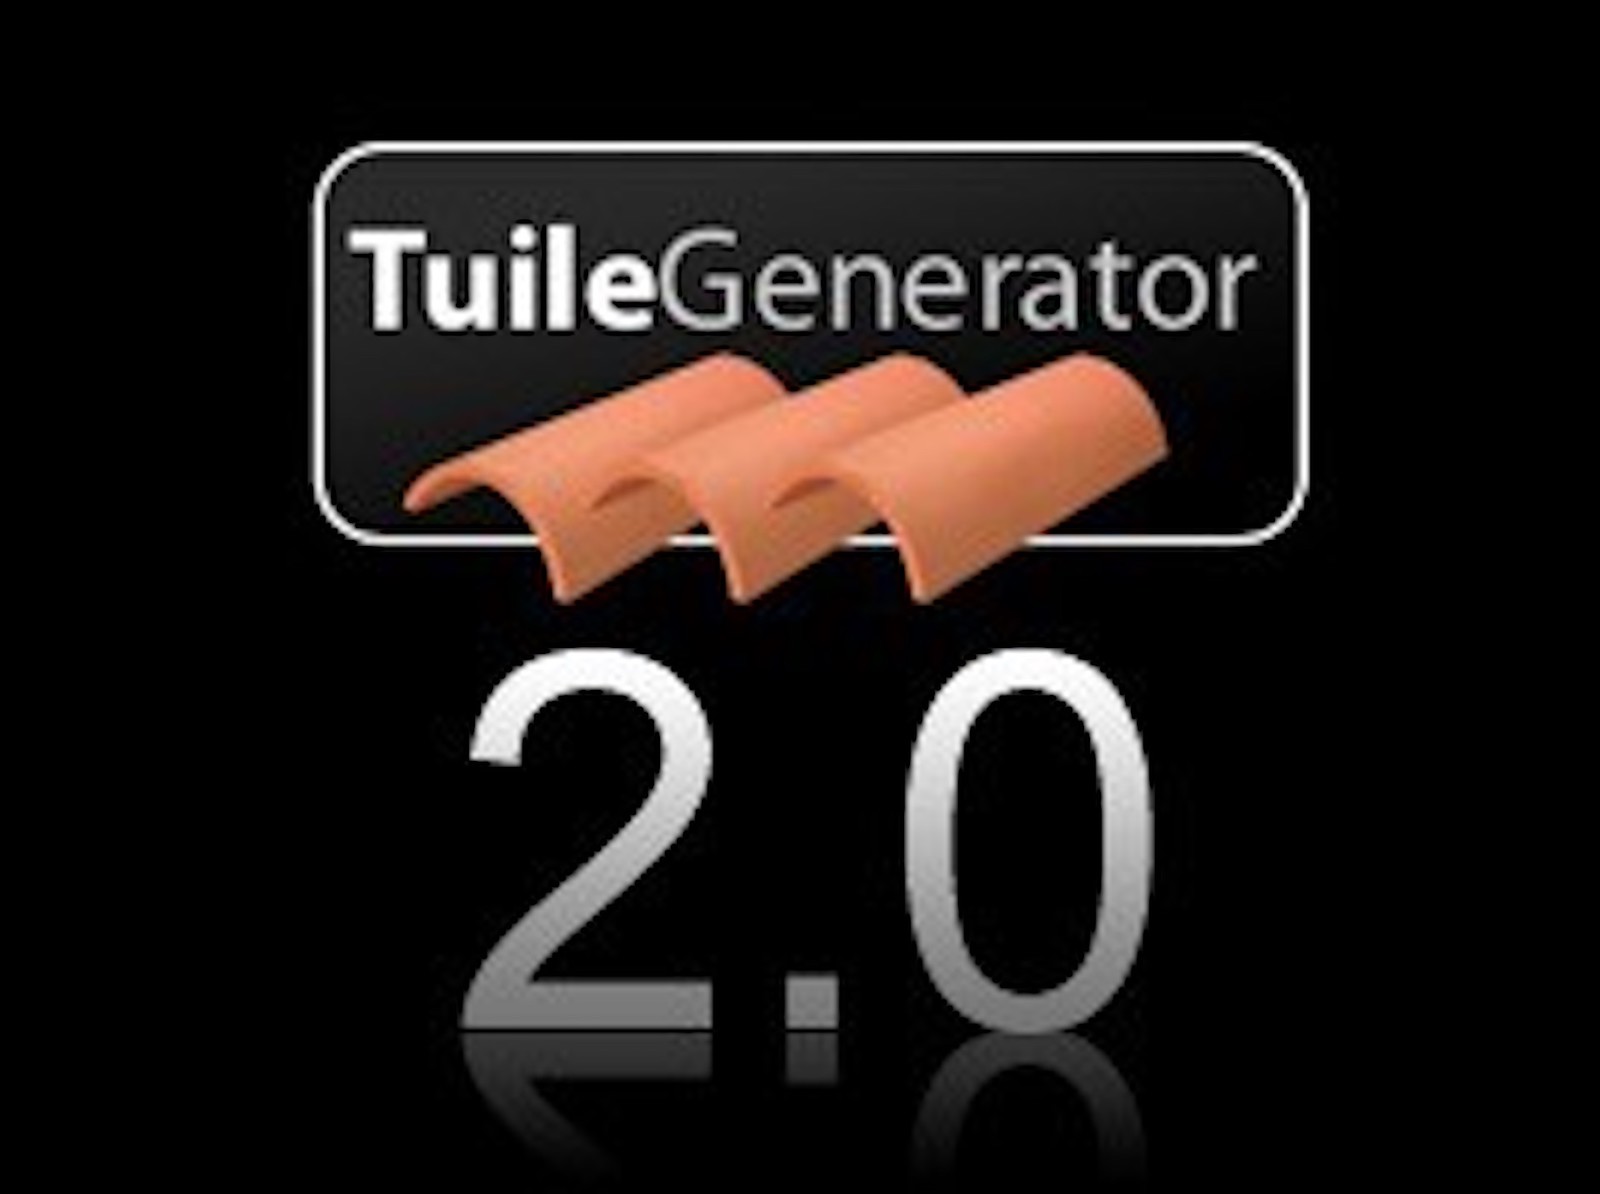 TuileGenerator 2.0